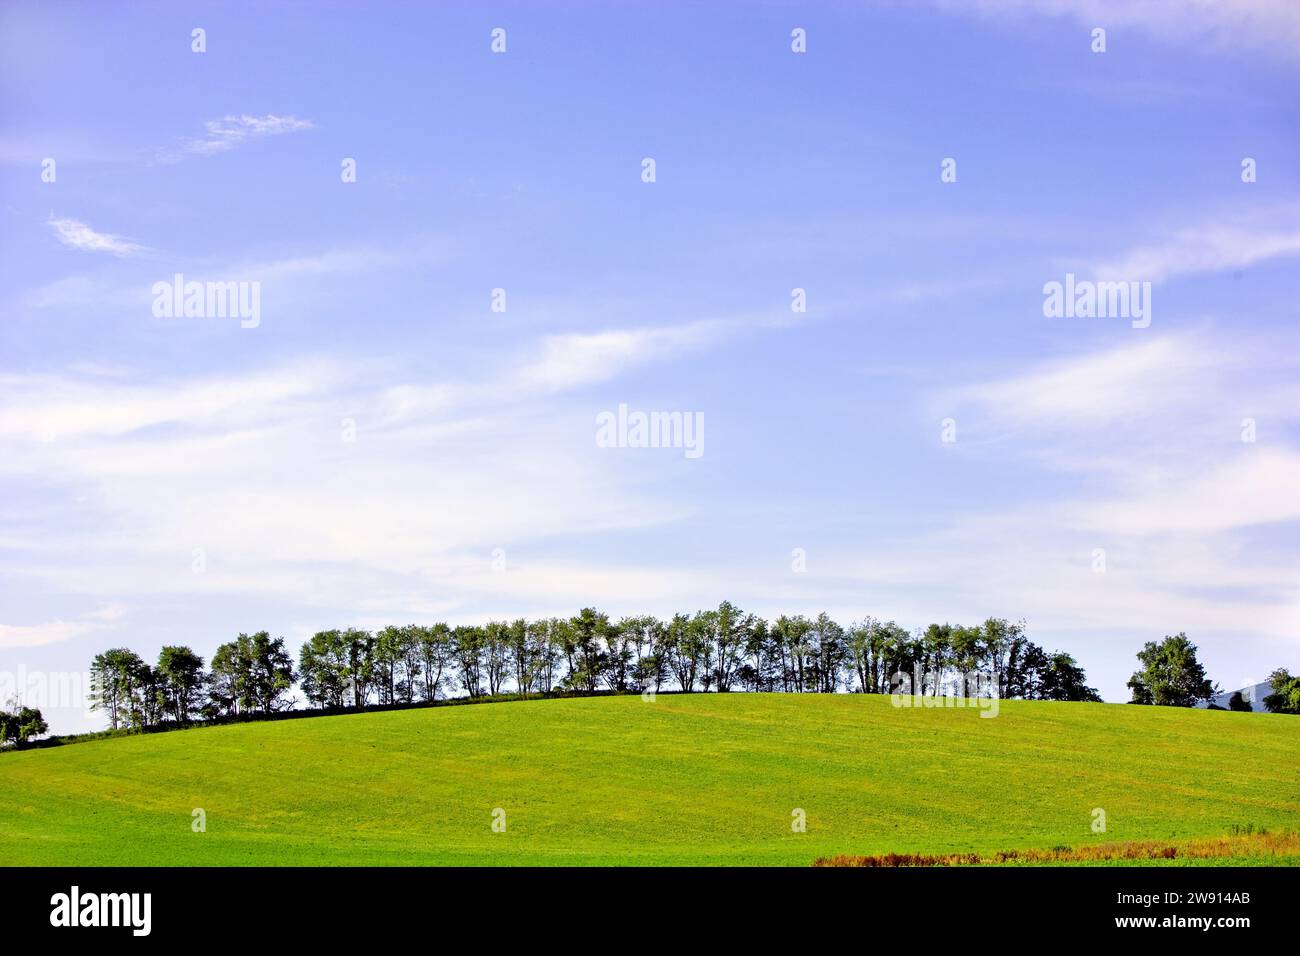 Une ligne d'arbres printaniers avec une belle prairie verte et un ciel bleu au-dessus Banque D'Images